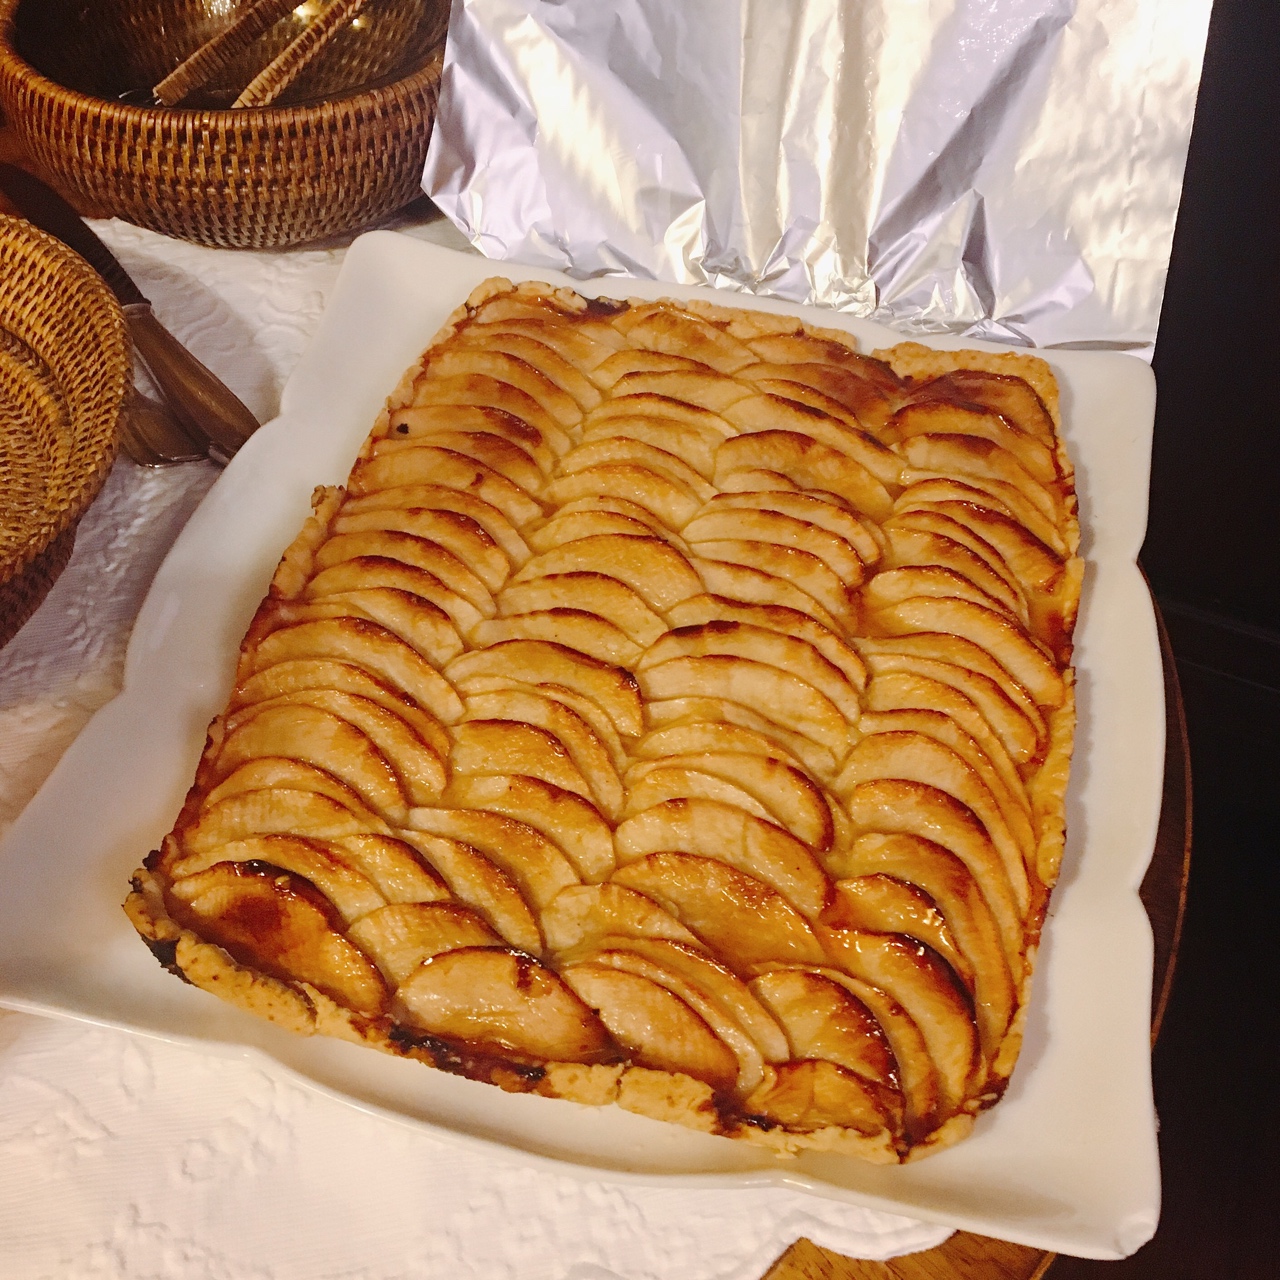 法式苹果挞tarte aux pommes